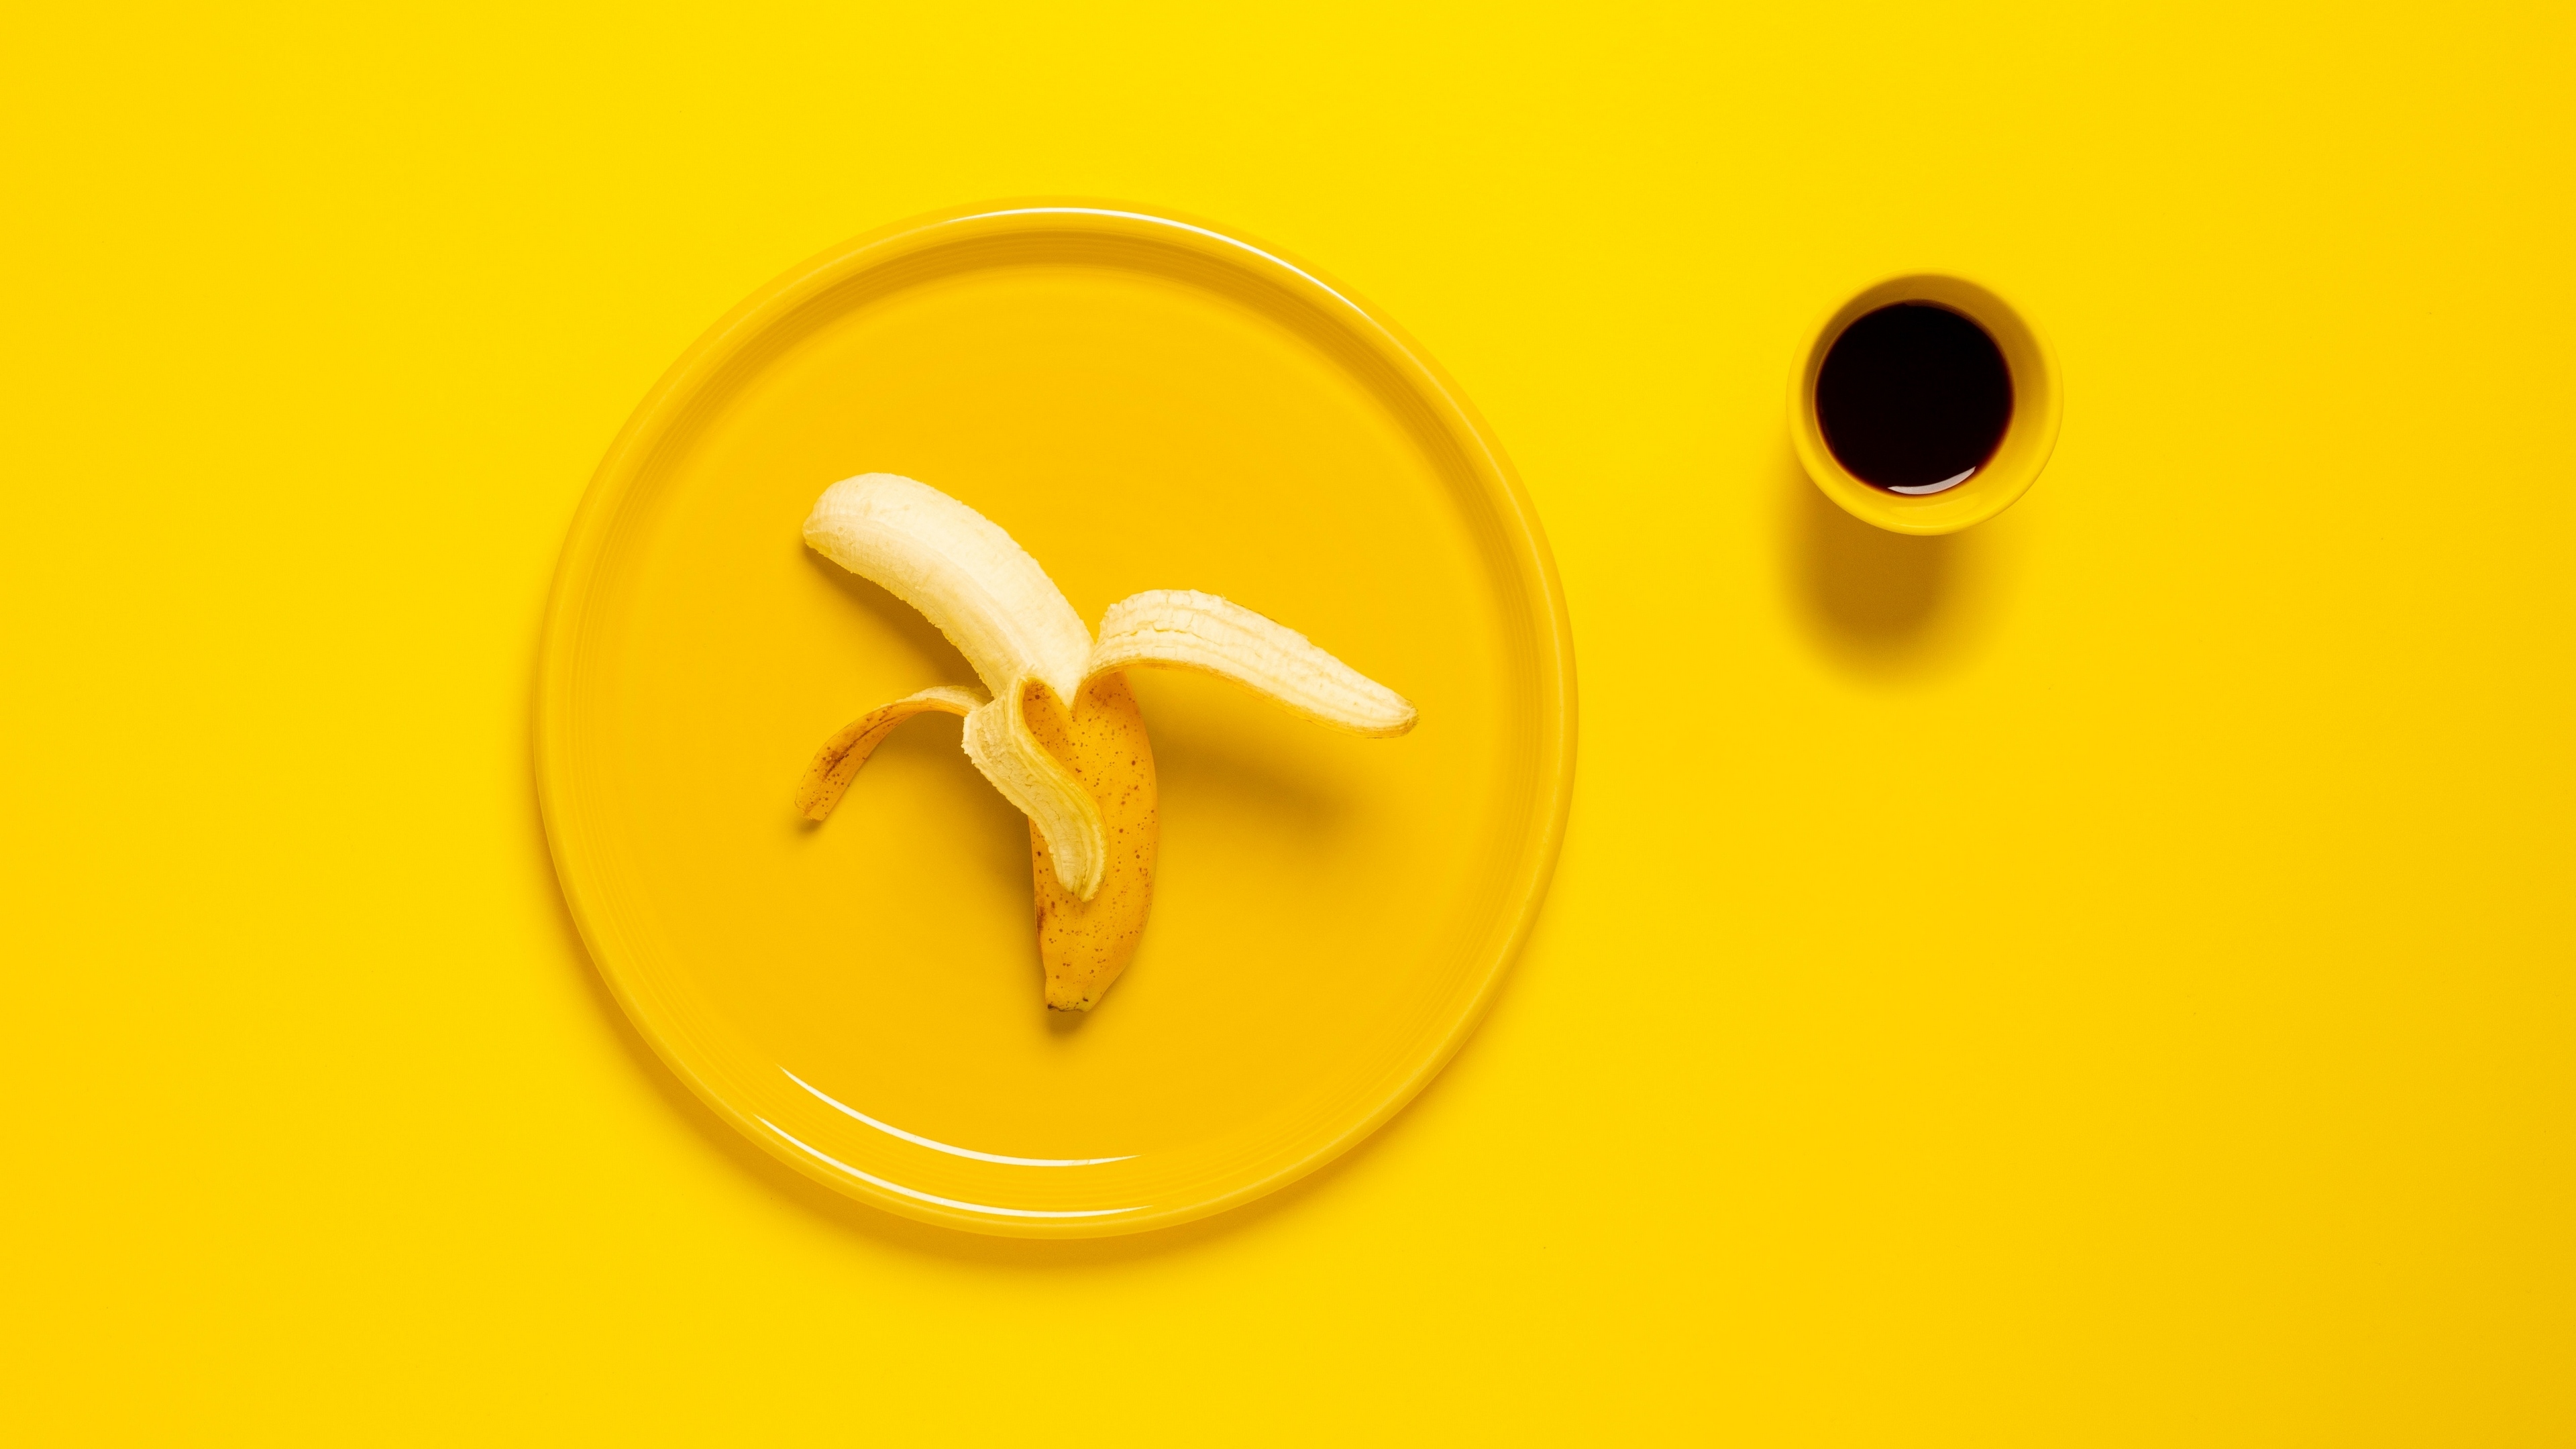 Угадай желтый. Желтые обои. Кофе на желтом фоне. Банан на желтом фоне. Банановая кожура Минимализм.